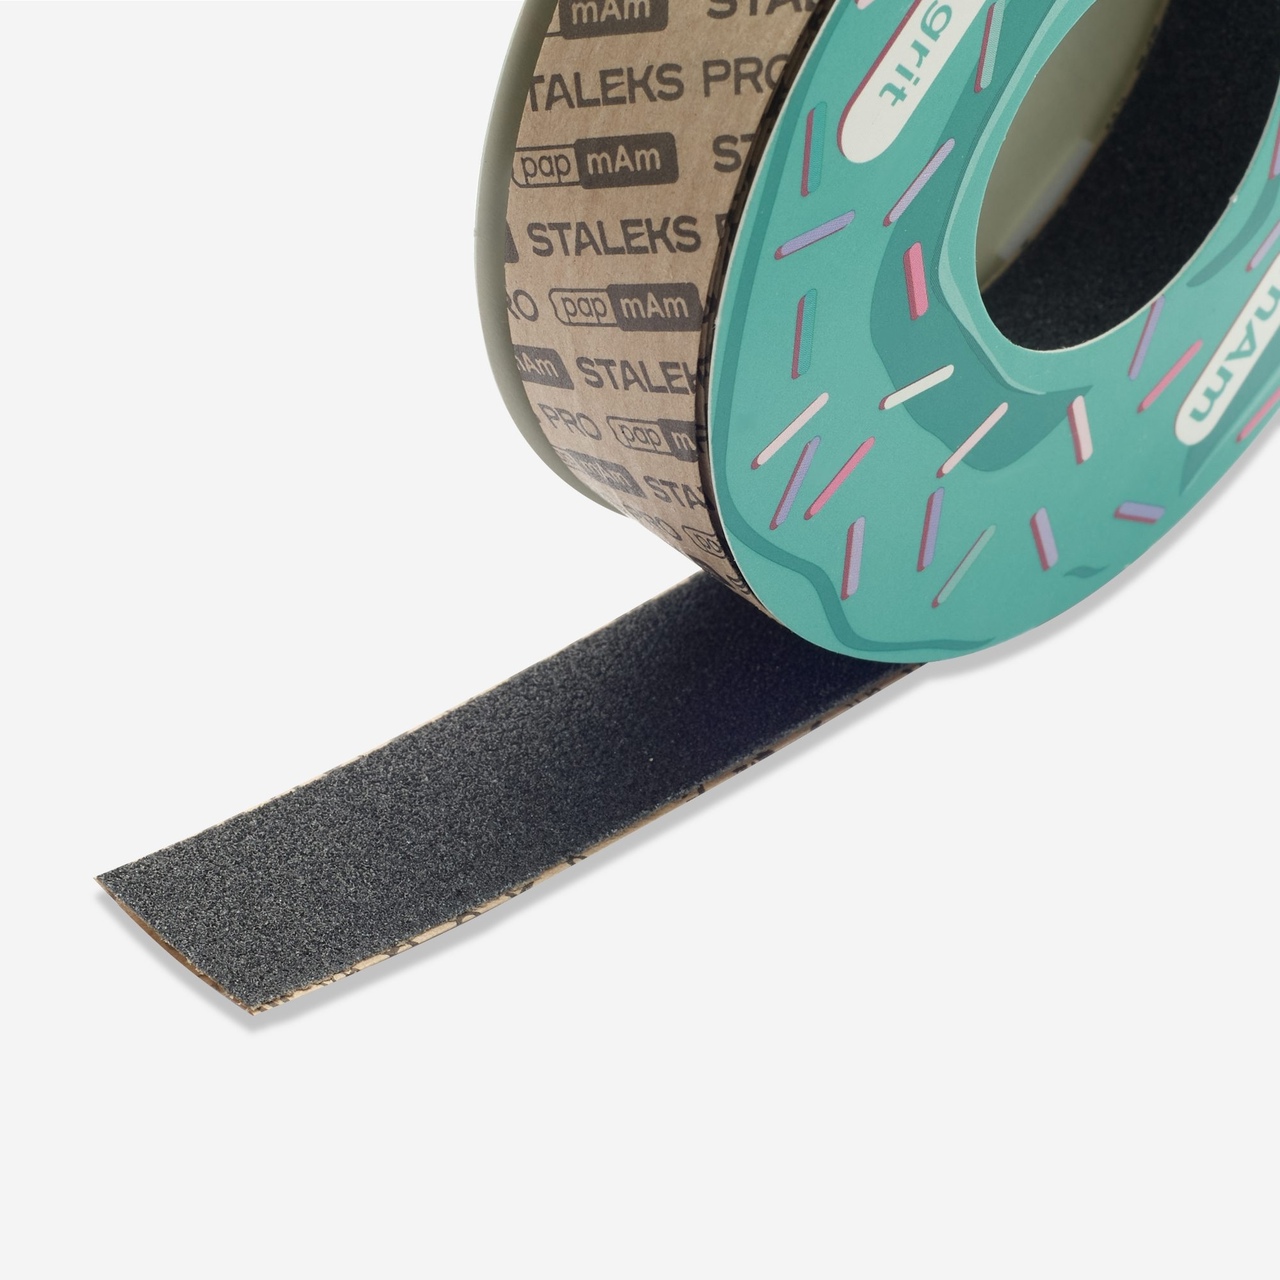 Запасной блок файл-ленты papmAm для пластиковой катушки Bobbinail STALEKS PRO 100 грит, 6м